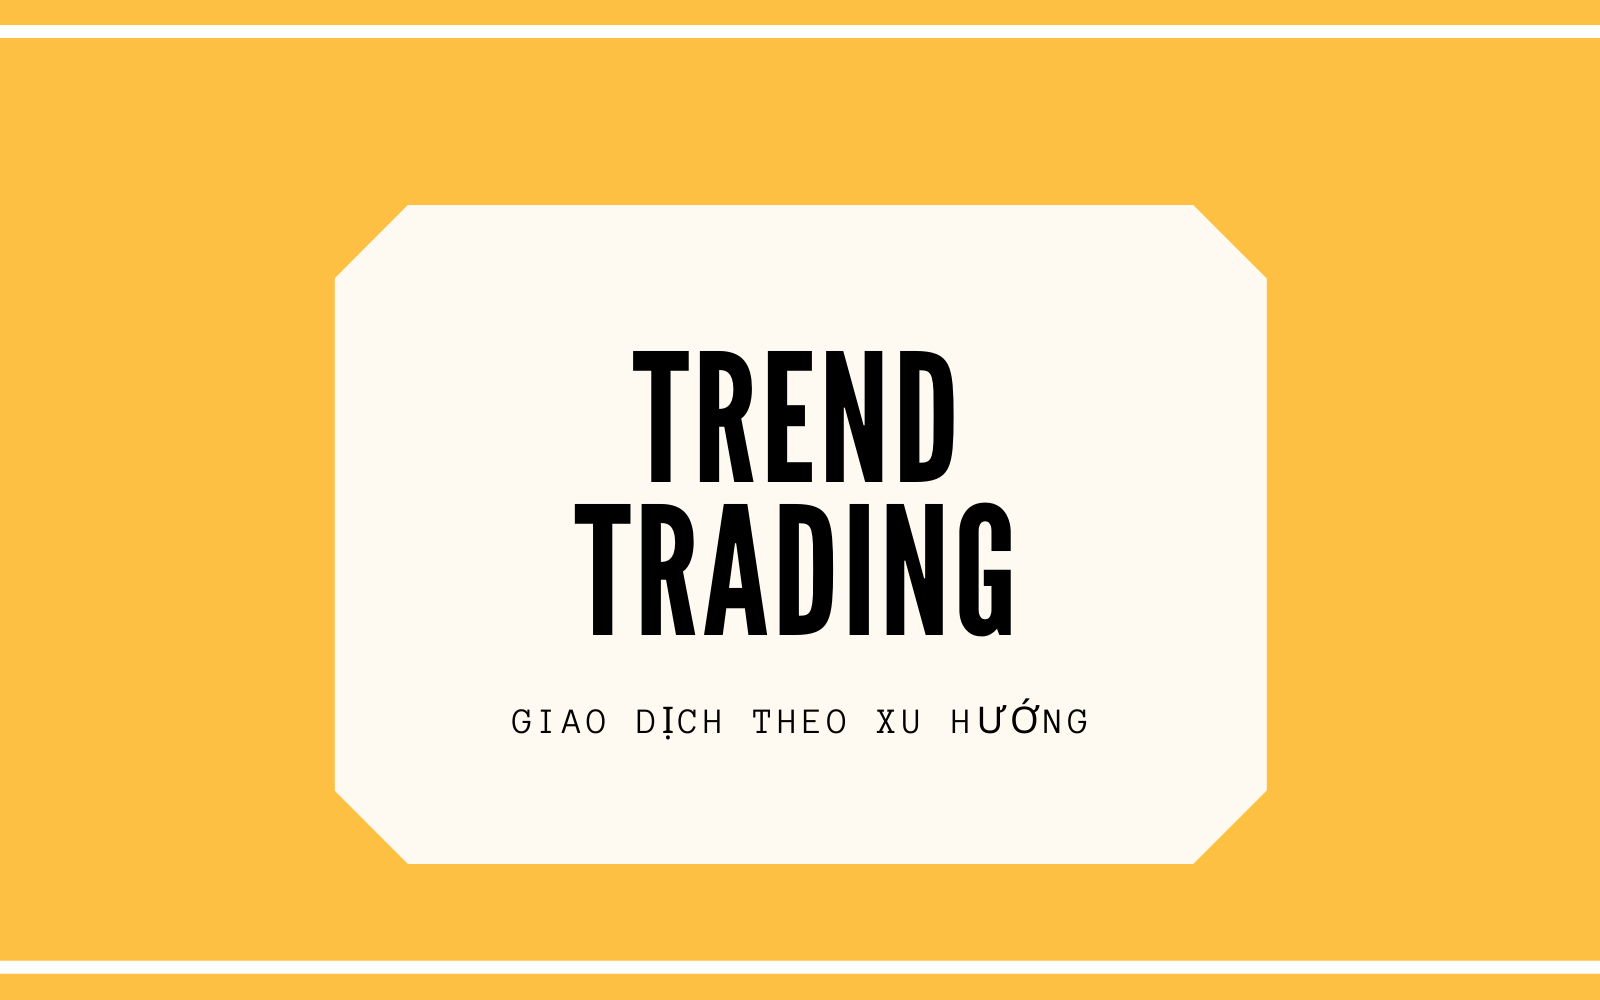 Giao dịch theo xu hướng hiện nay(Trend Trading)